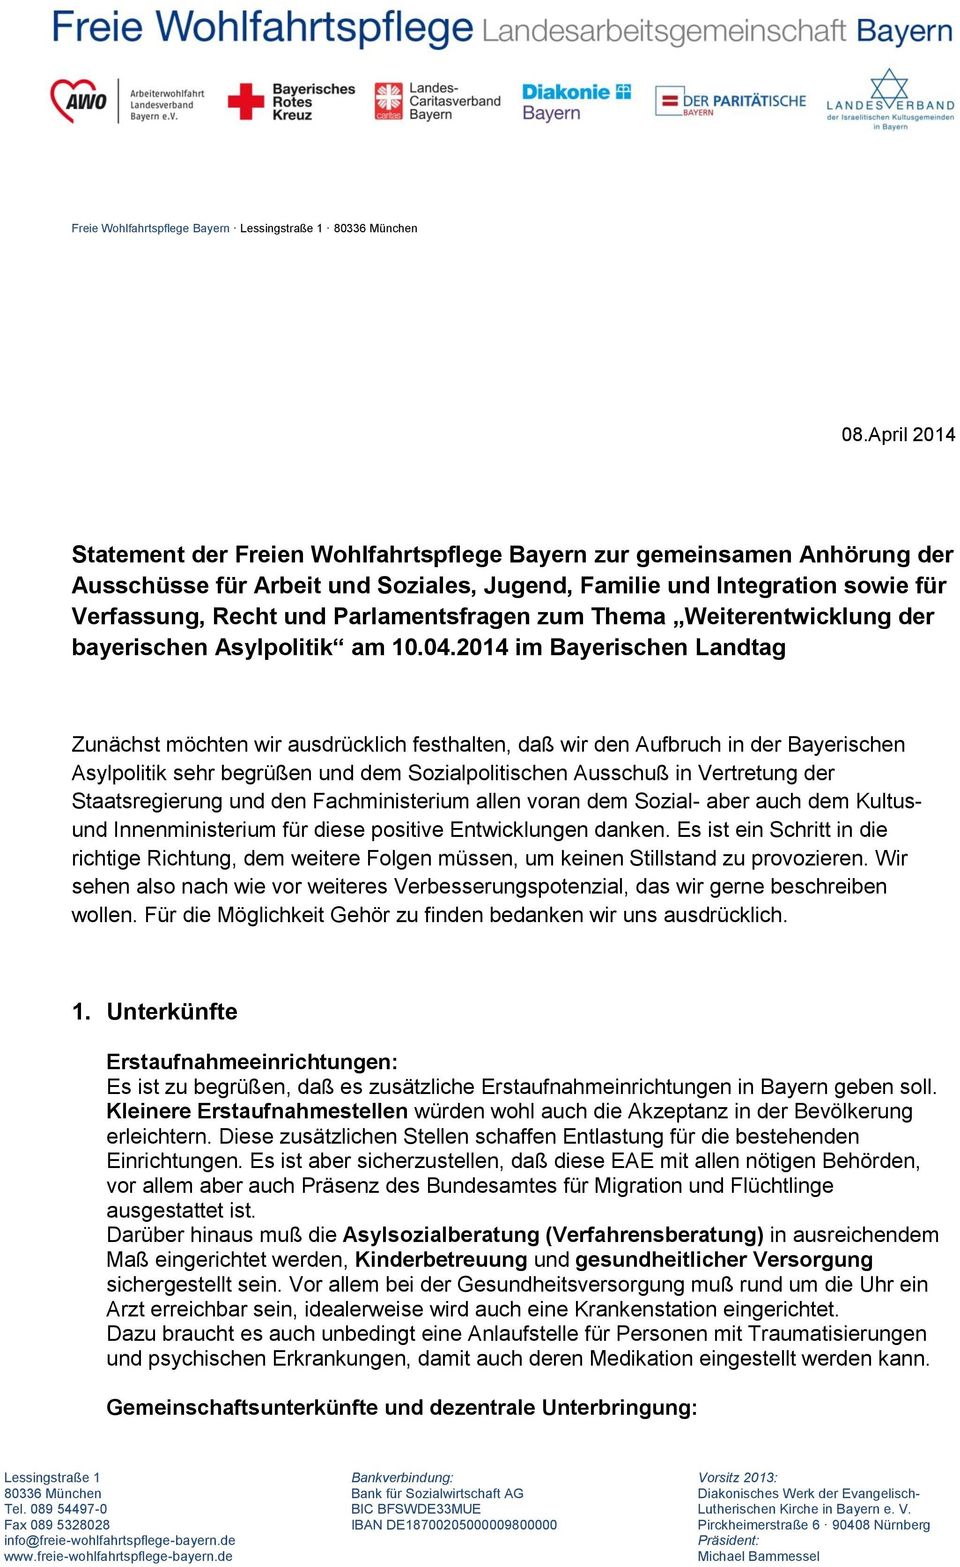 Parlamentsfragen zum Thema Weiterentwicklung der bayerischen Asylpolitik am 10.04.